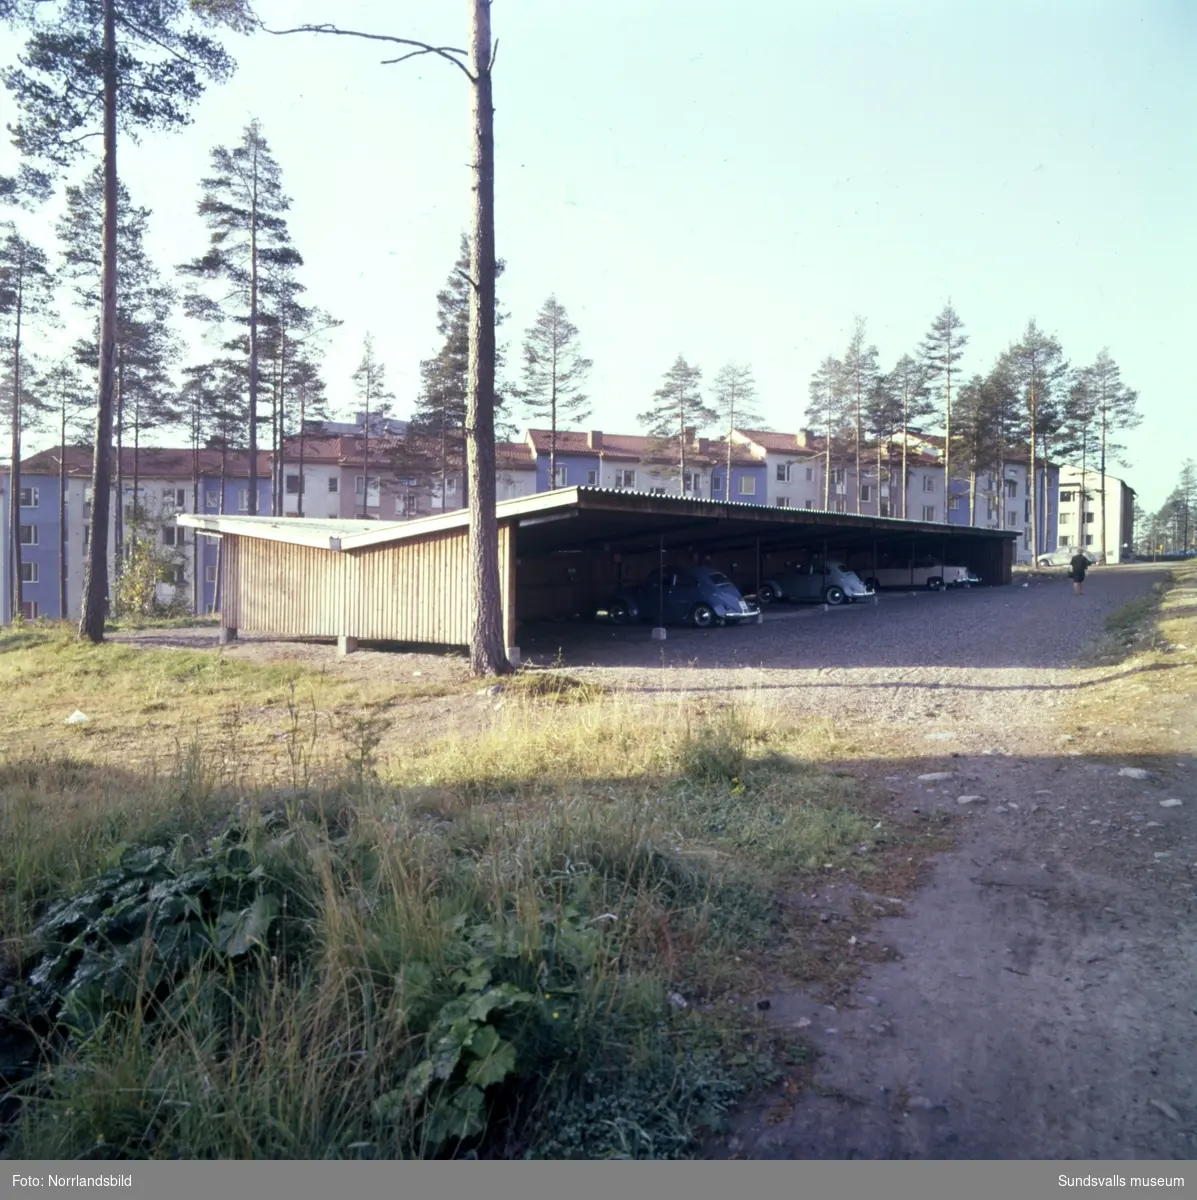 En stor grupp bilder på flerfamiljshusen i bostadsområdet Norrliden i Sundsvall. Baldersvägen, Kungsvägen, Norrlidsgatan, Tivolivägen.